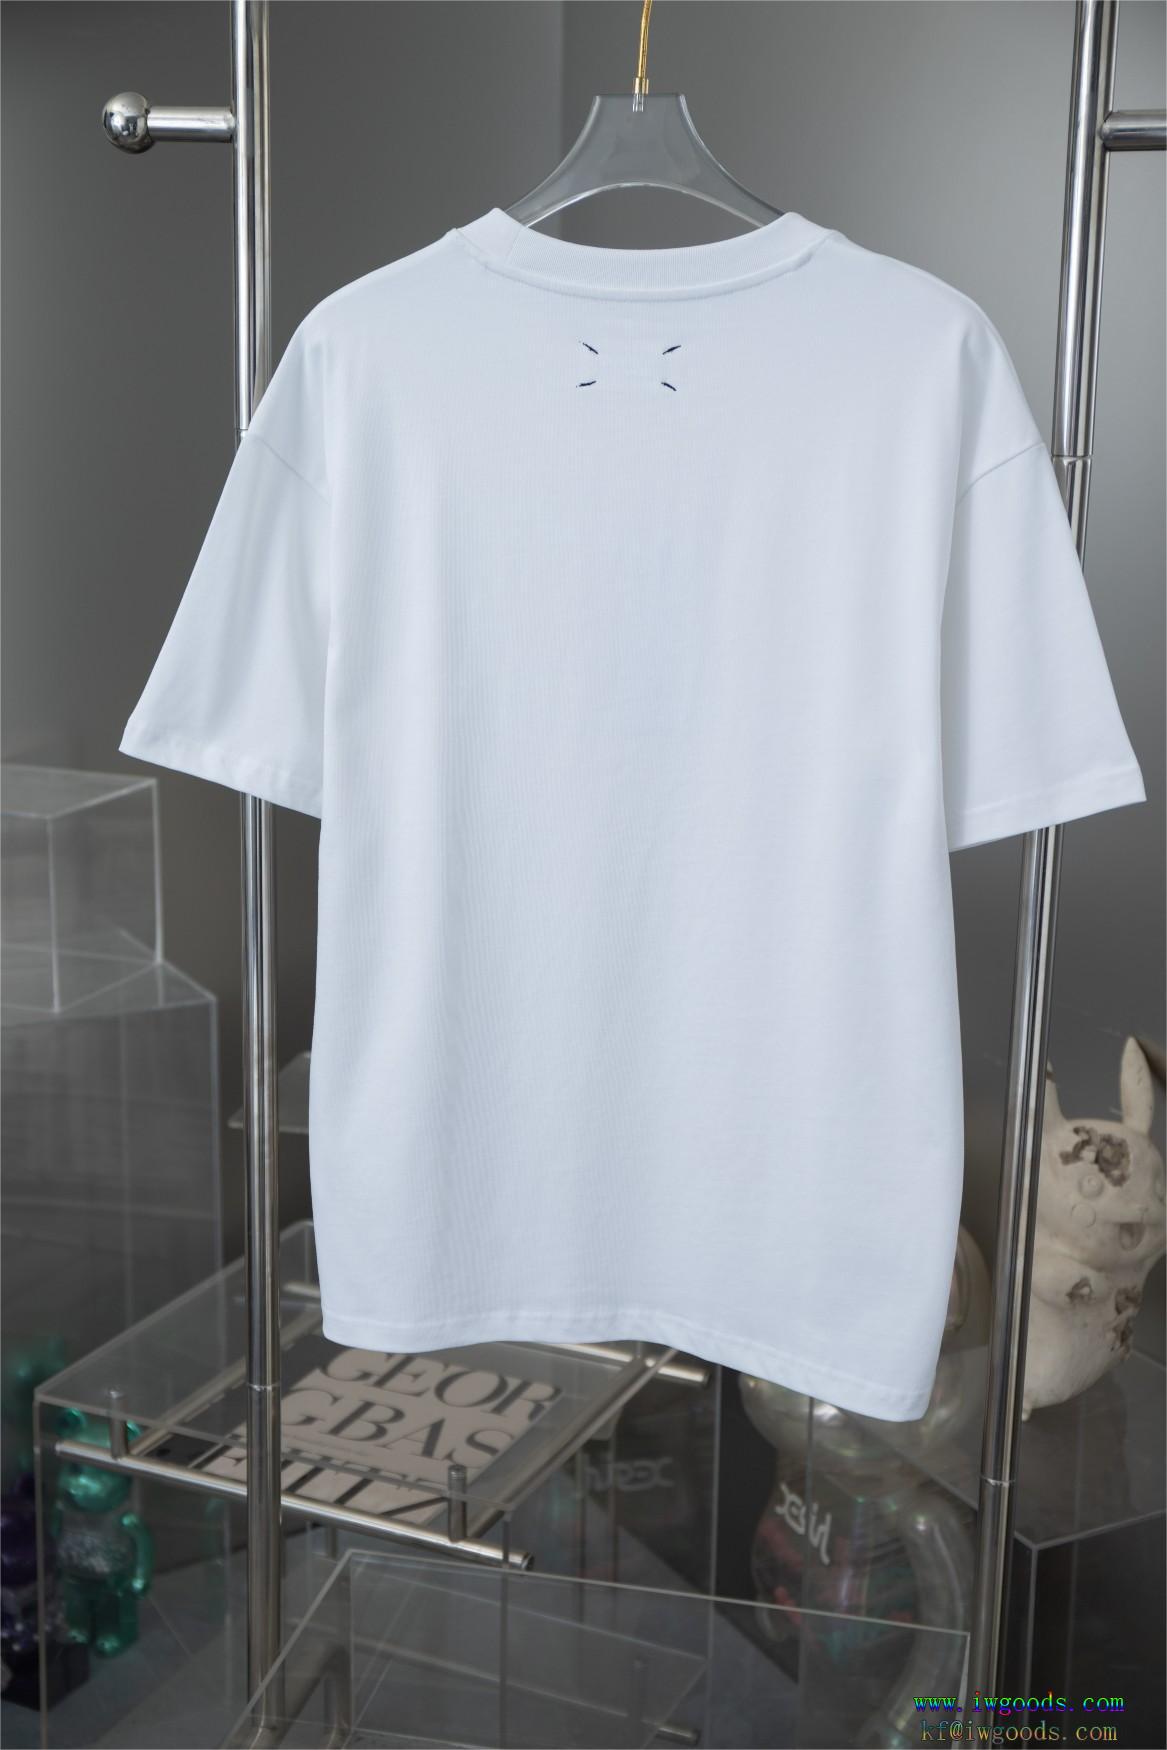 半袖Tシャツ【ユニセックス】Maison Margiela メゾン マルジェラブランド コピー  目を引く存在感抜群洗練された印象